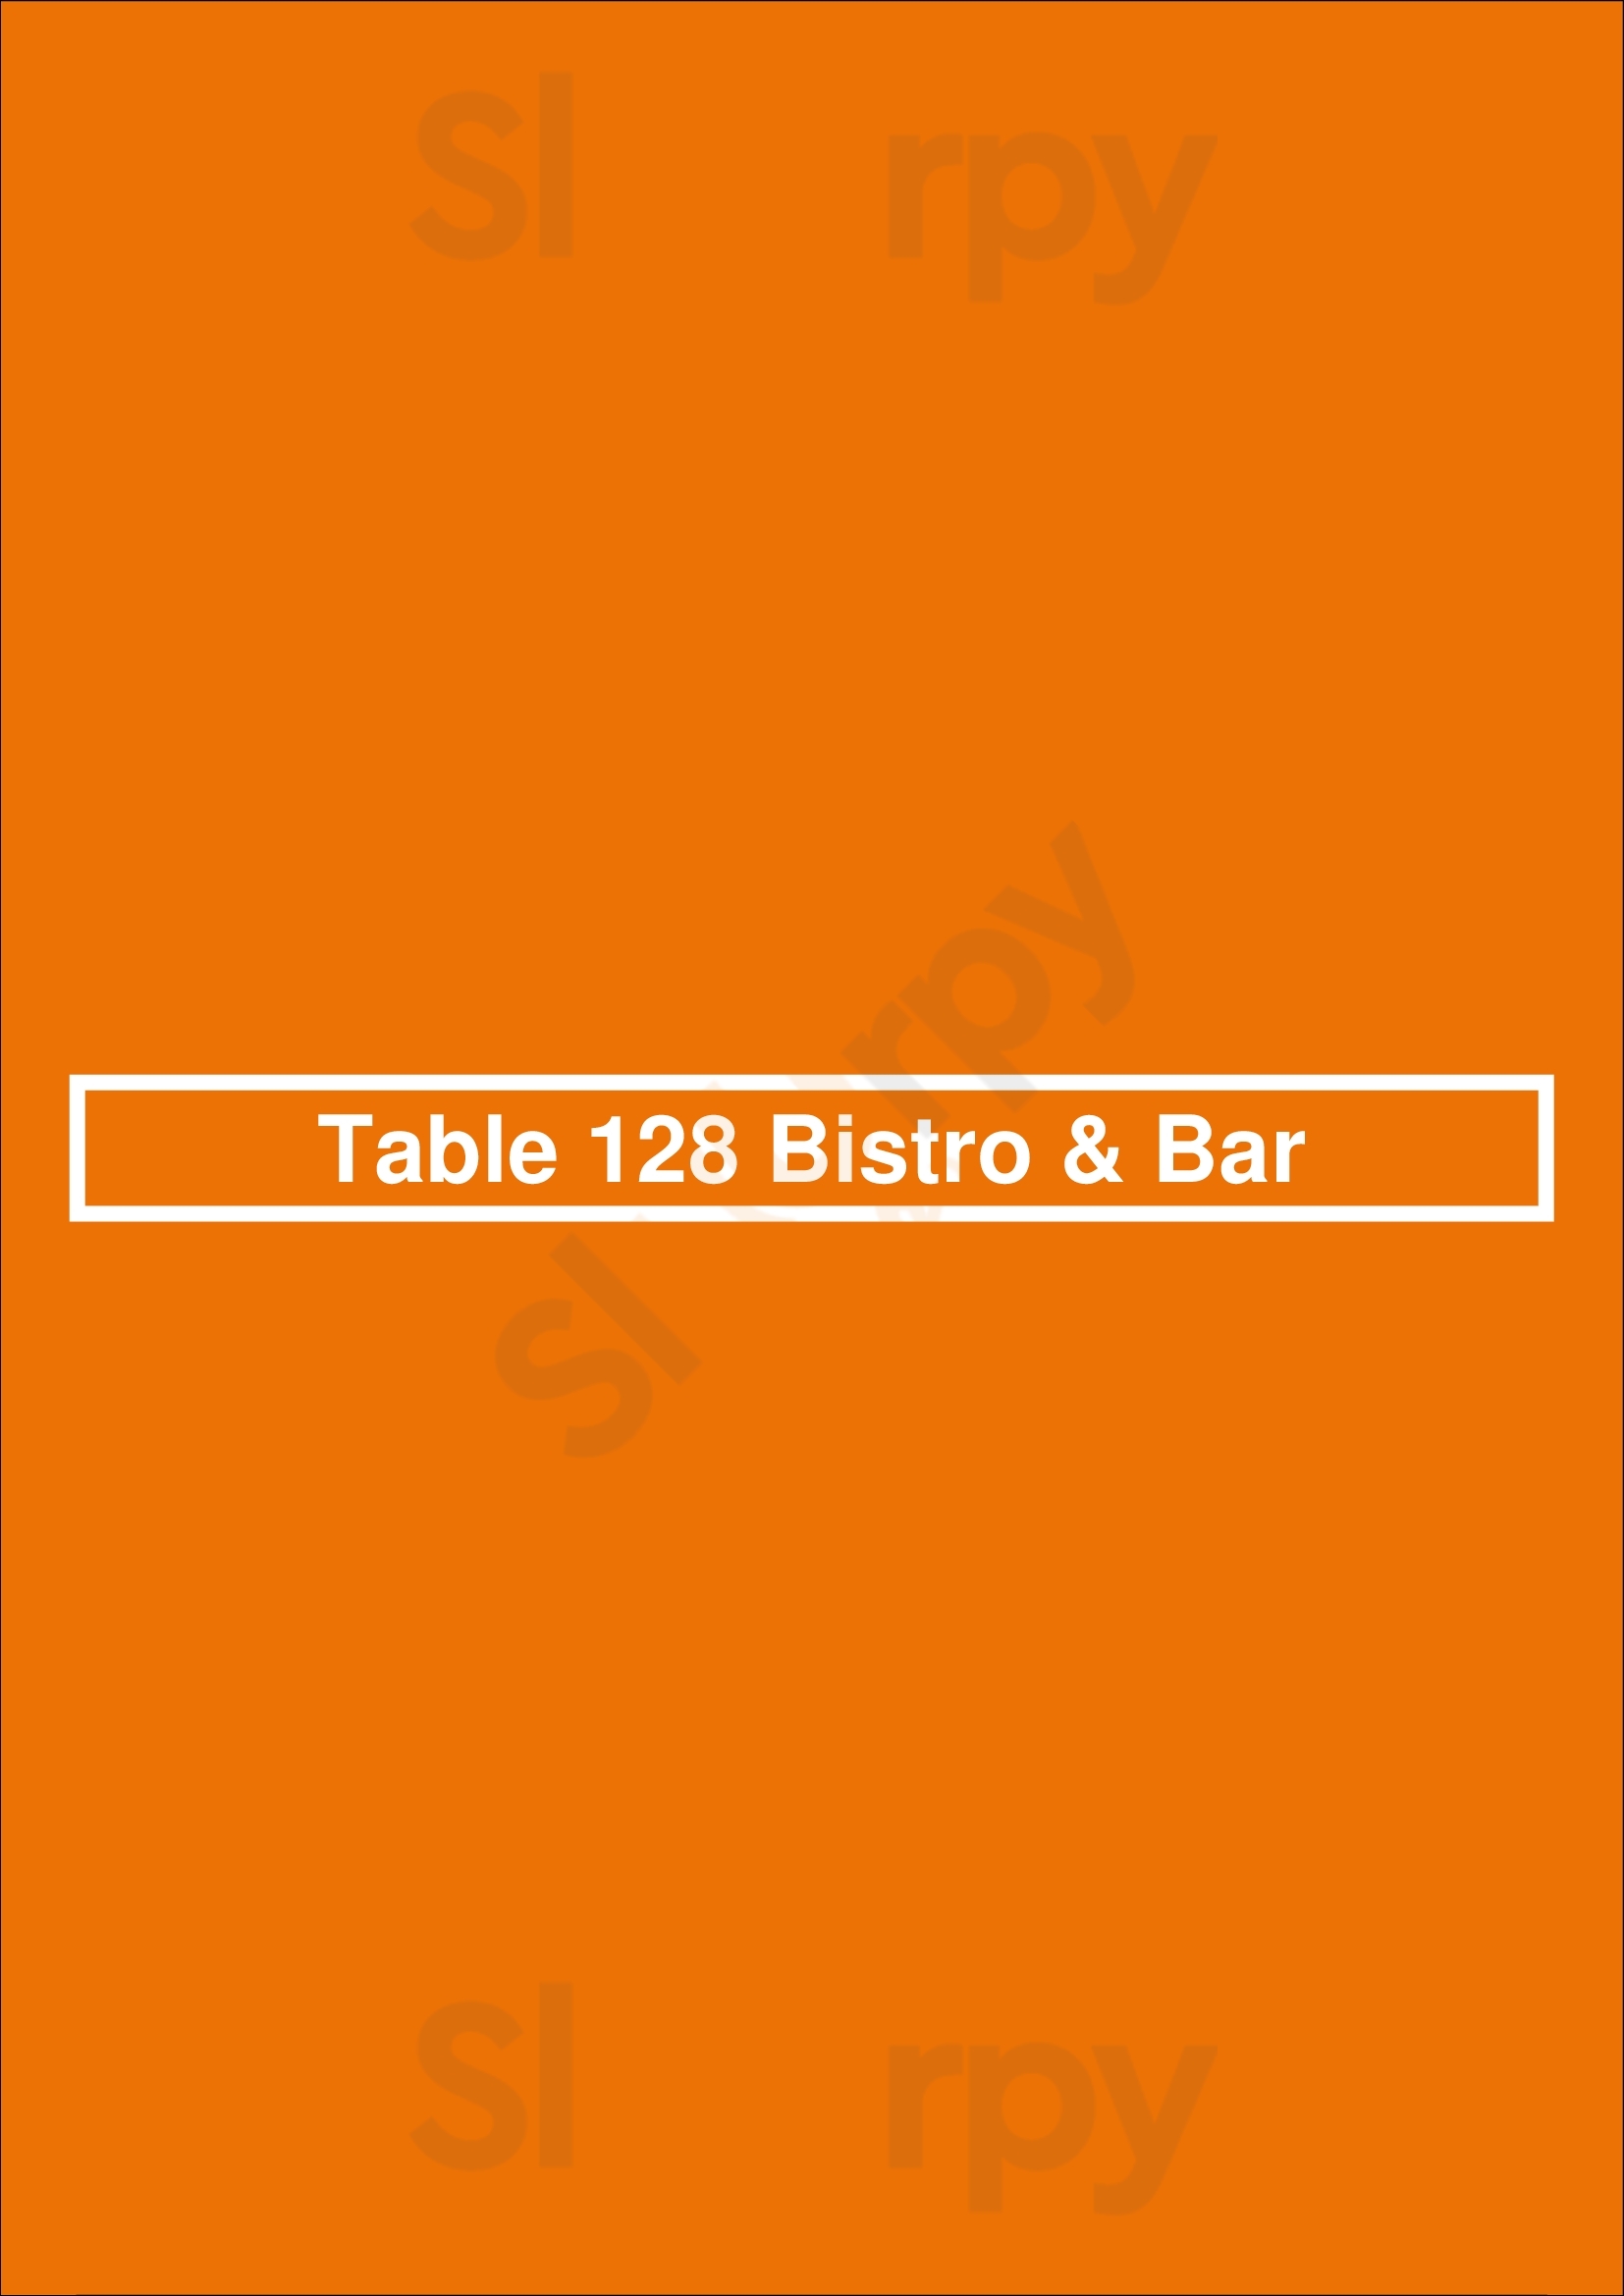 Table 128 Bistro & Bar Clive Menu - 1